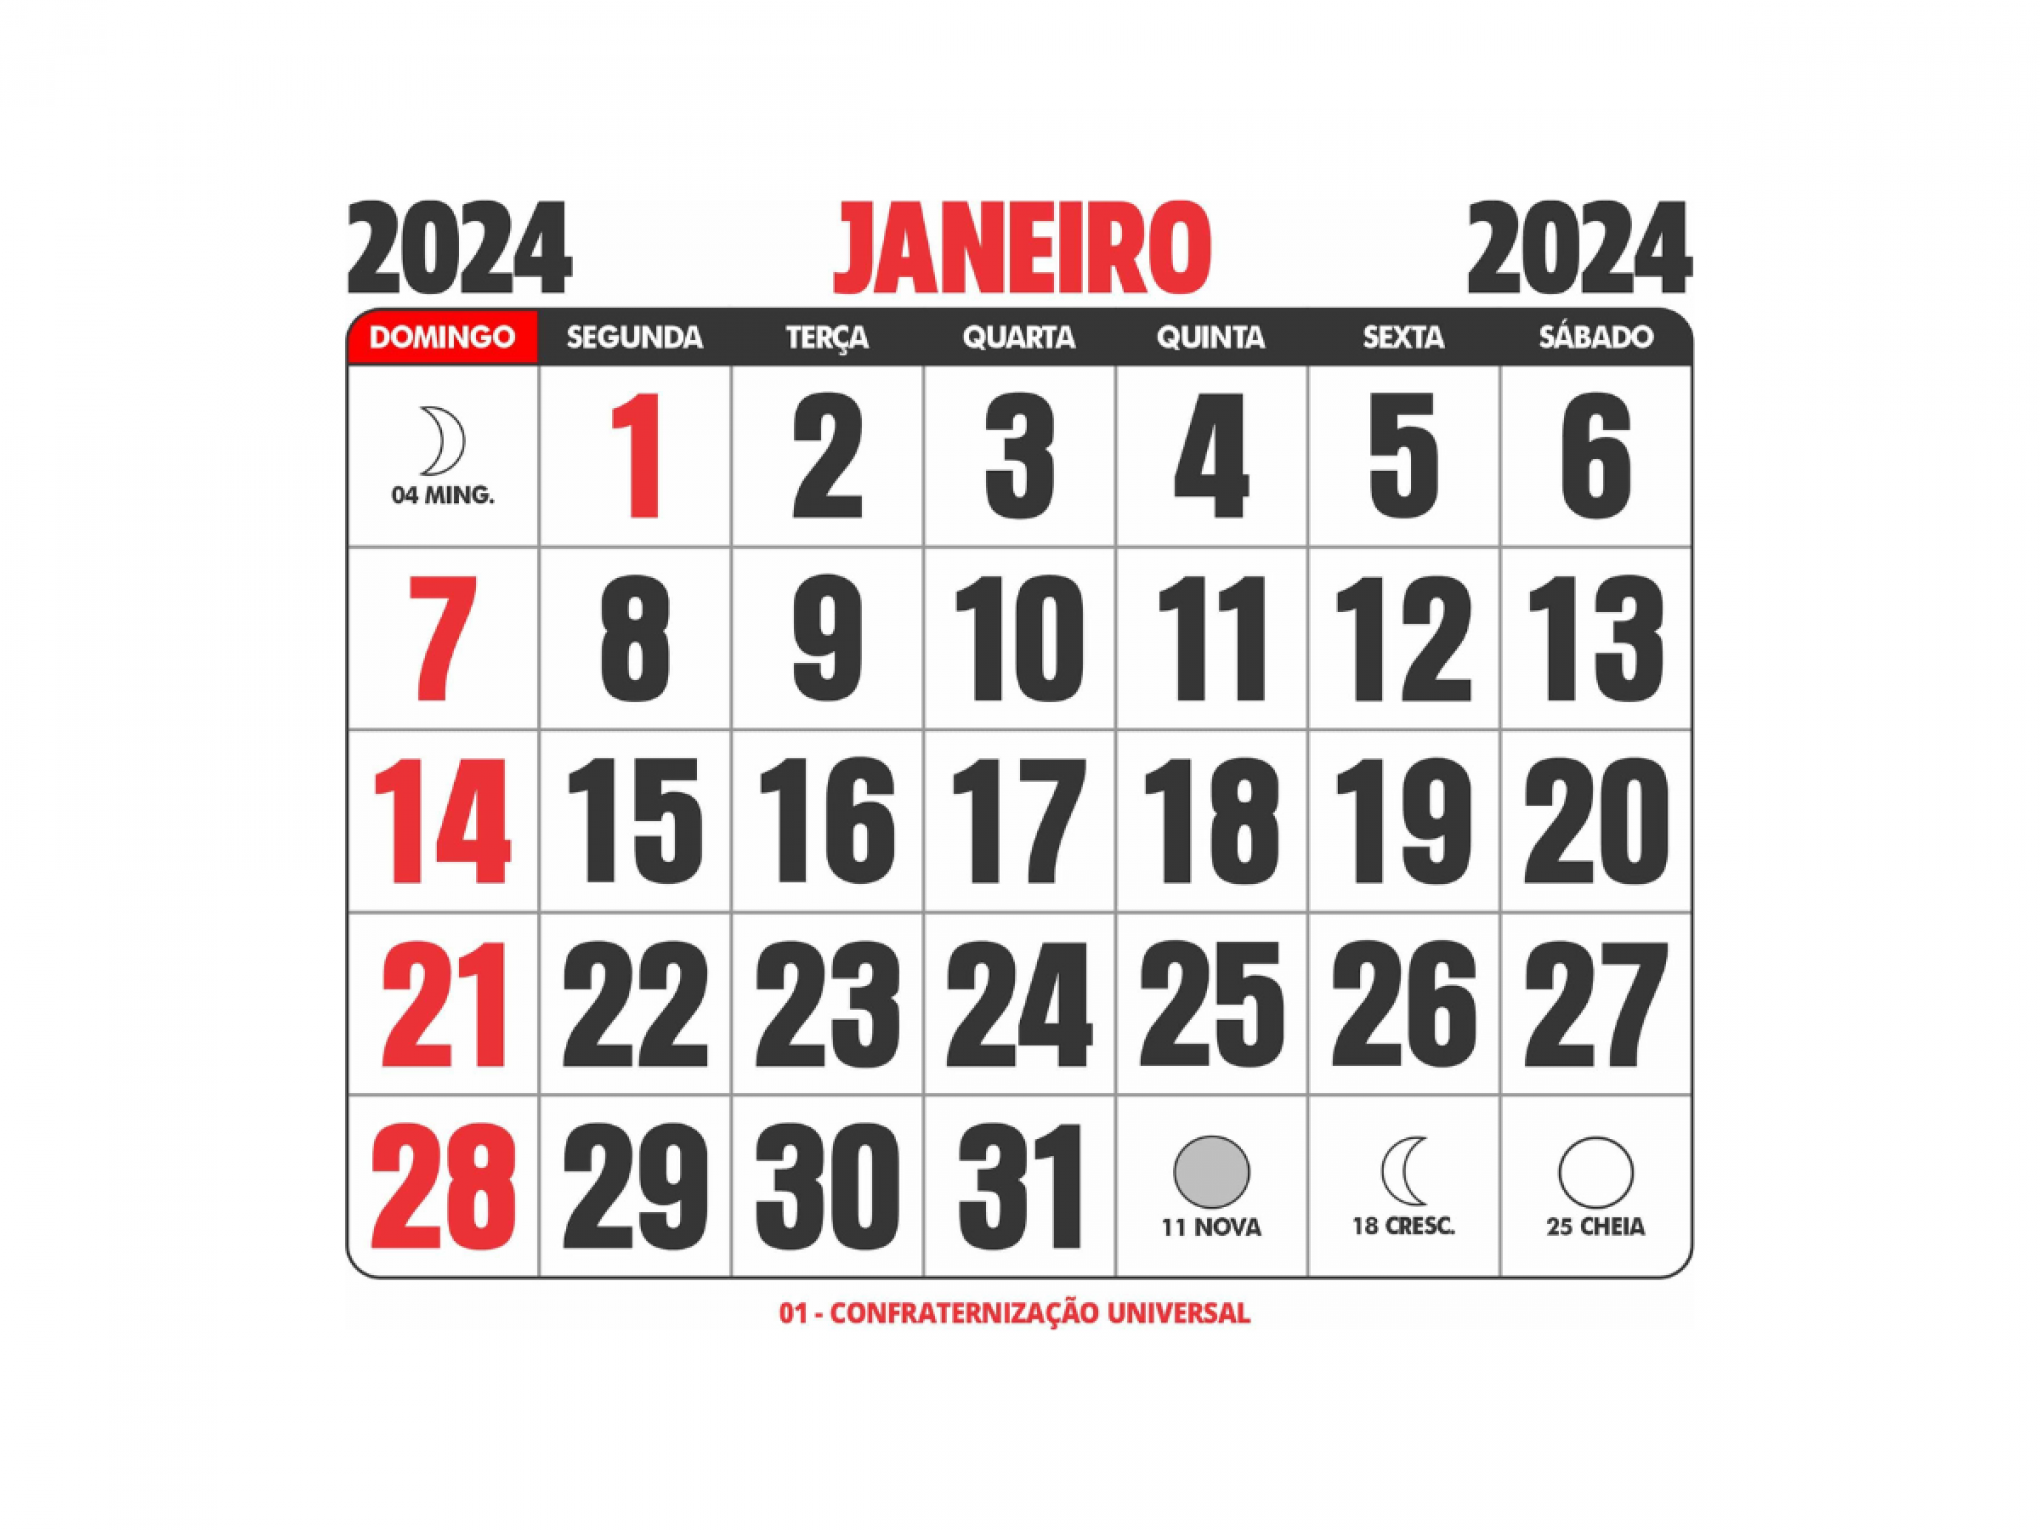 Feriados em dezembro de 2022: veja sites de calendário para conferir